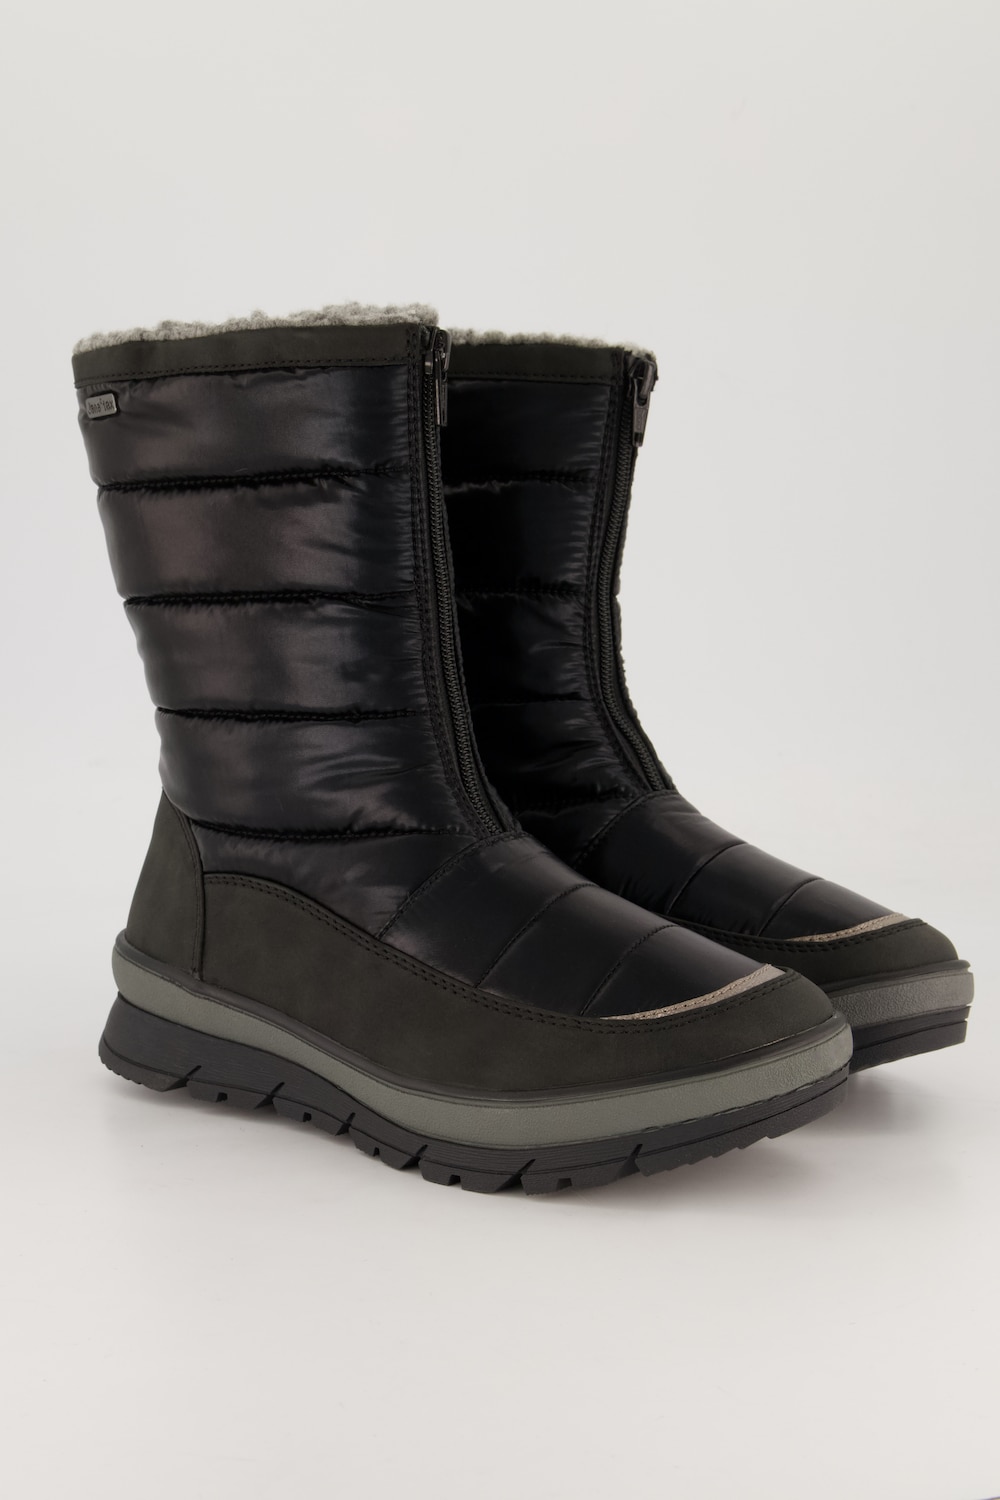 Stepp-Boots, Damen, schwarz, Größe: 39, Polyester/Sonstige/Synthetische Fasern, Ulla Popken von Ulla Popken